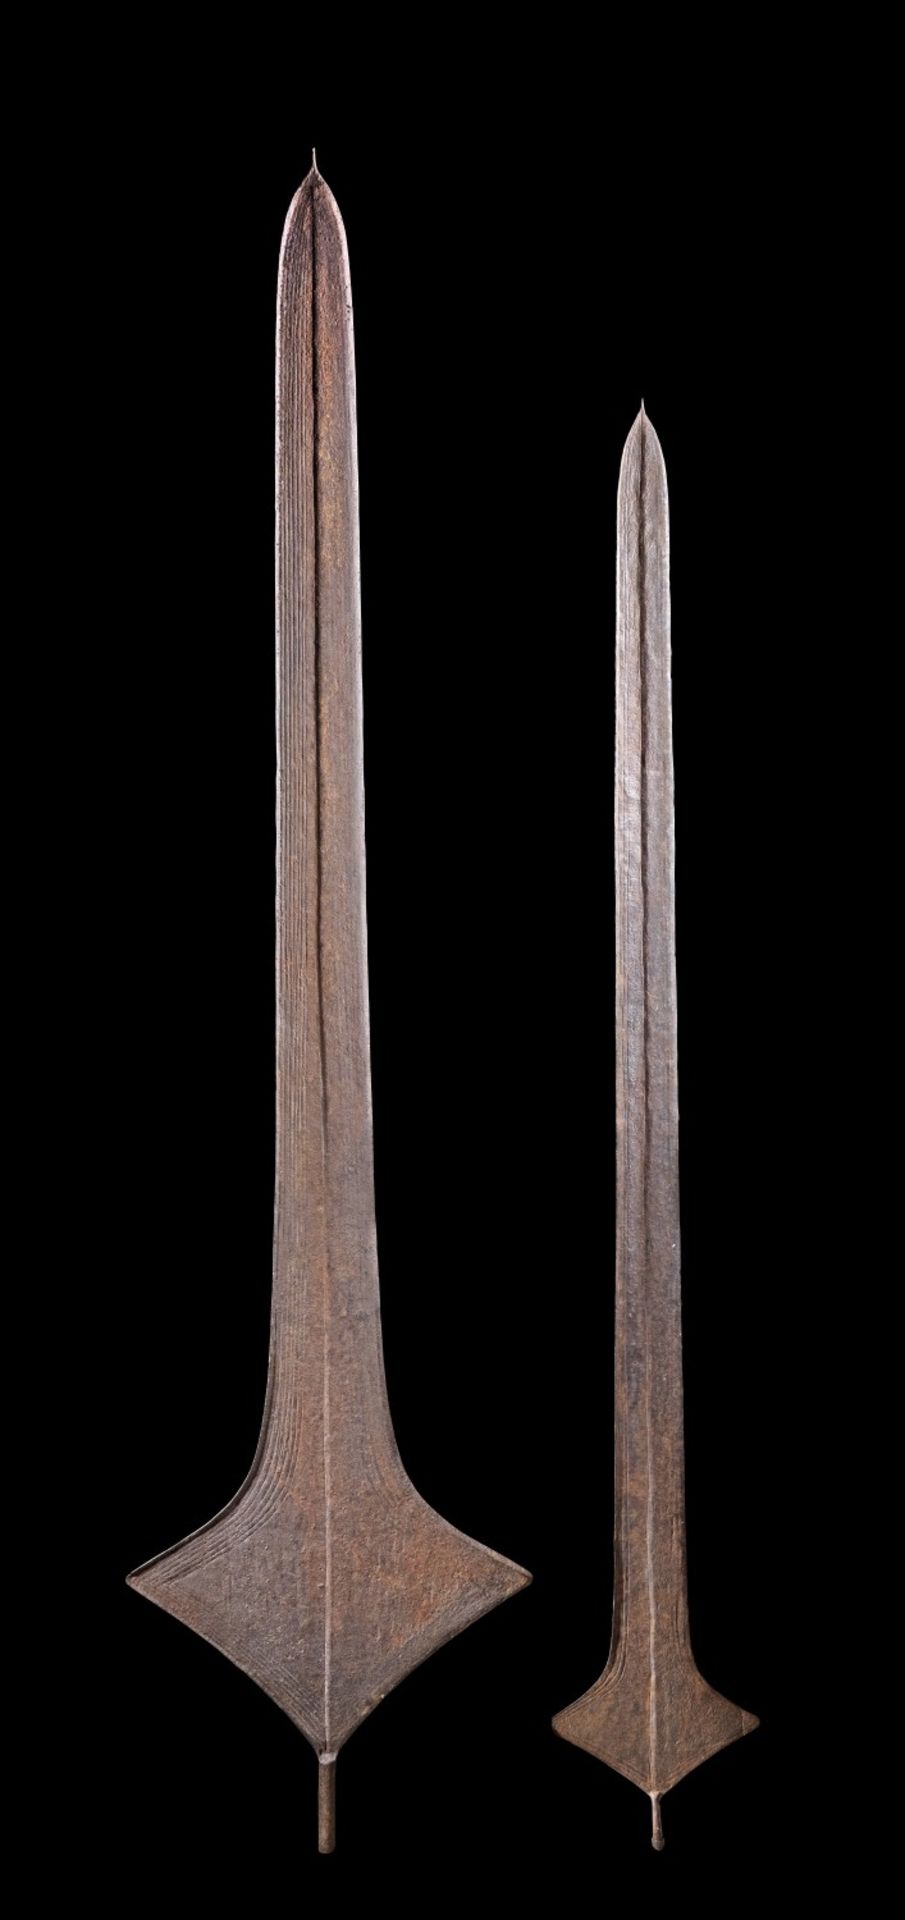 Sammlung Speergeld aus Eisen. Lokele, Demokratische Republik Kongo. H 151 und 175,5cm. Speerförmiges